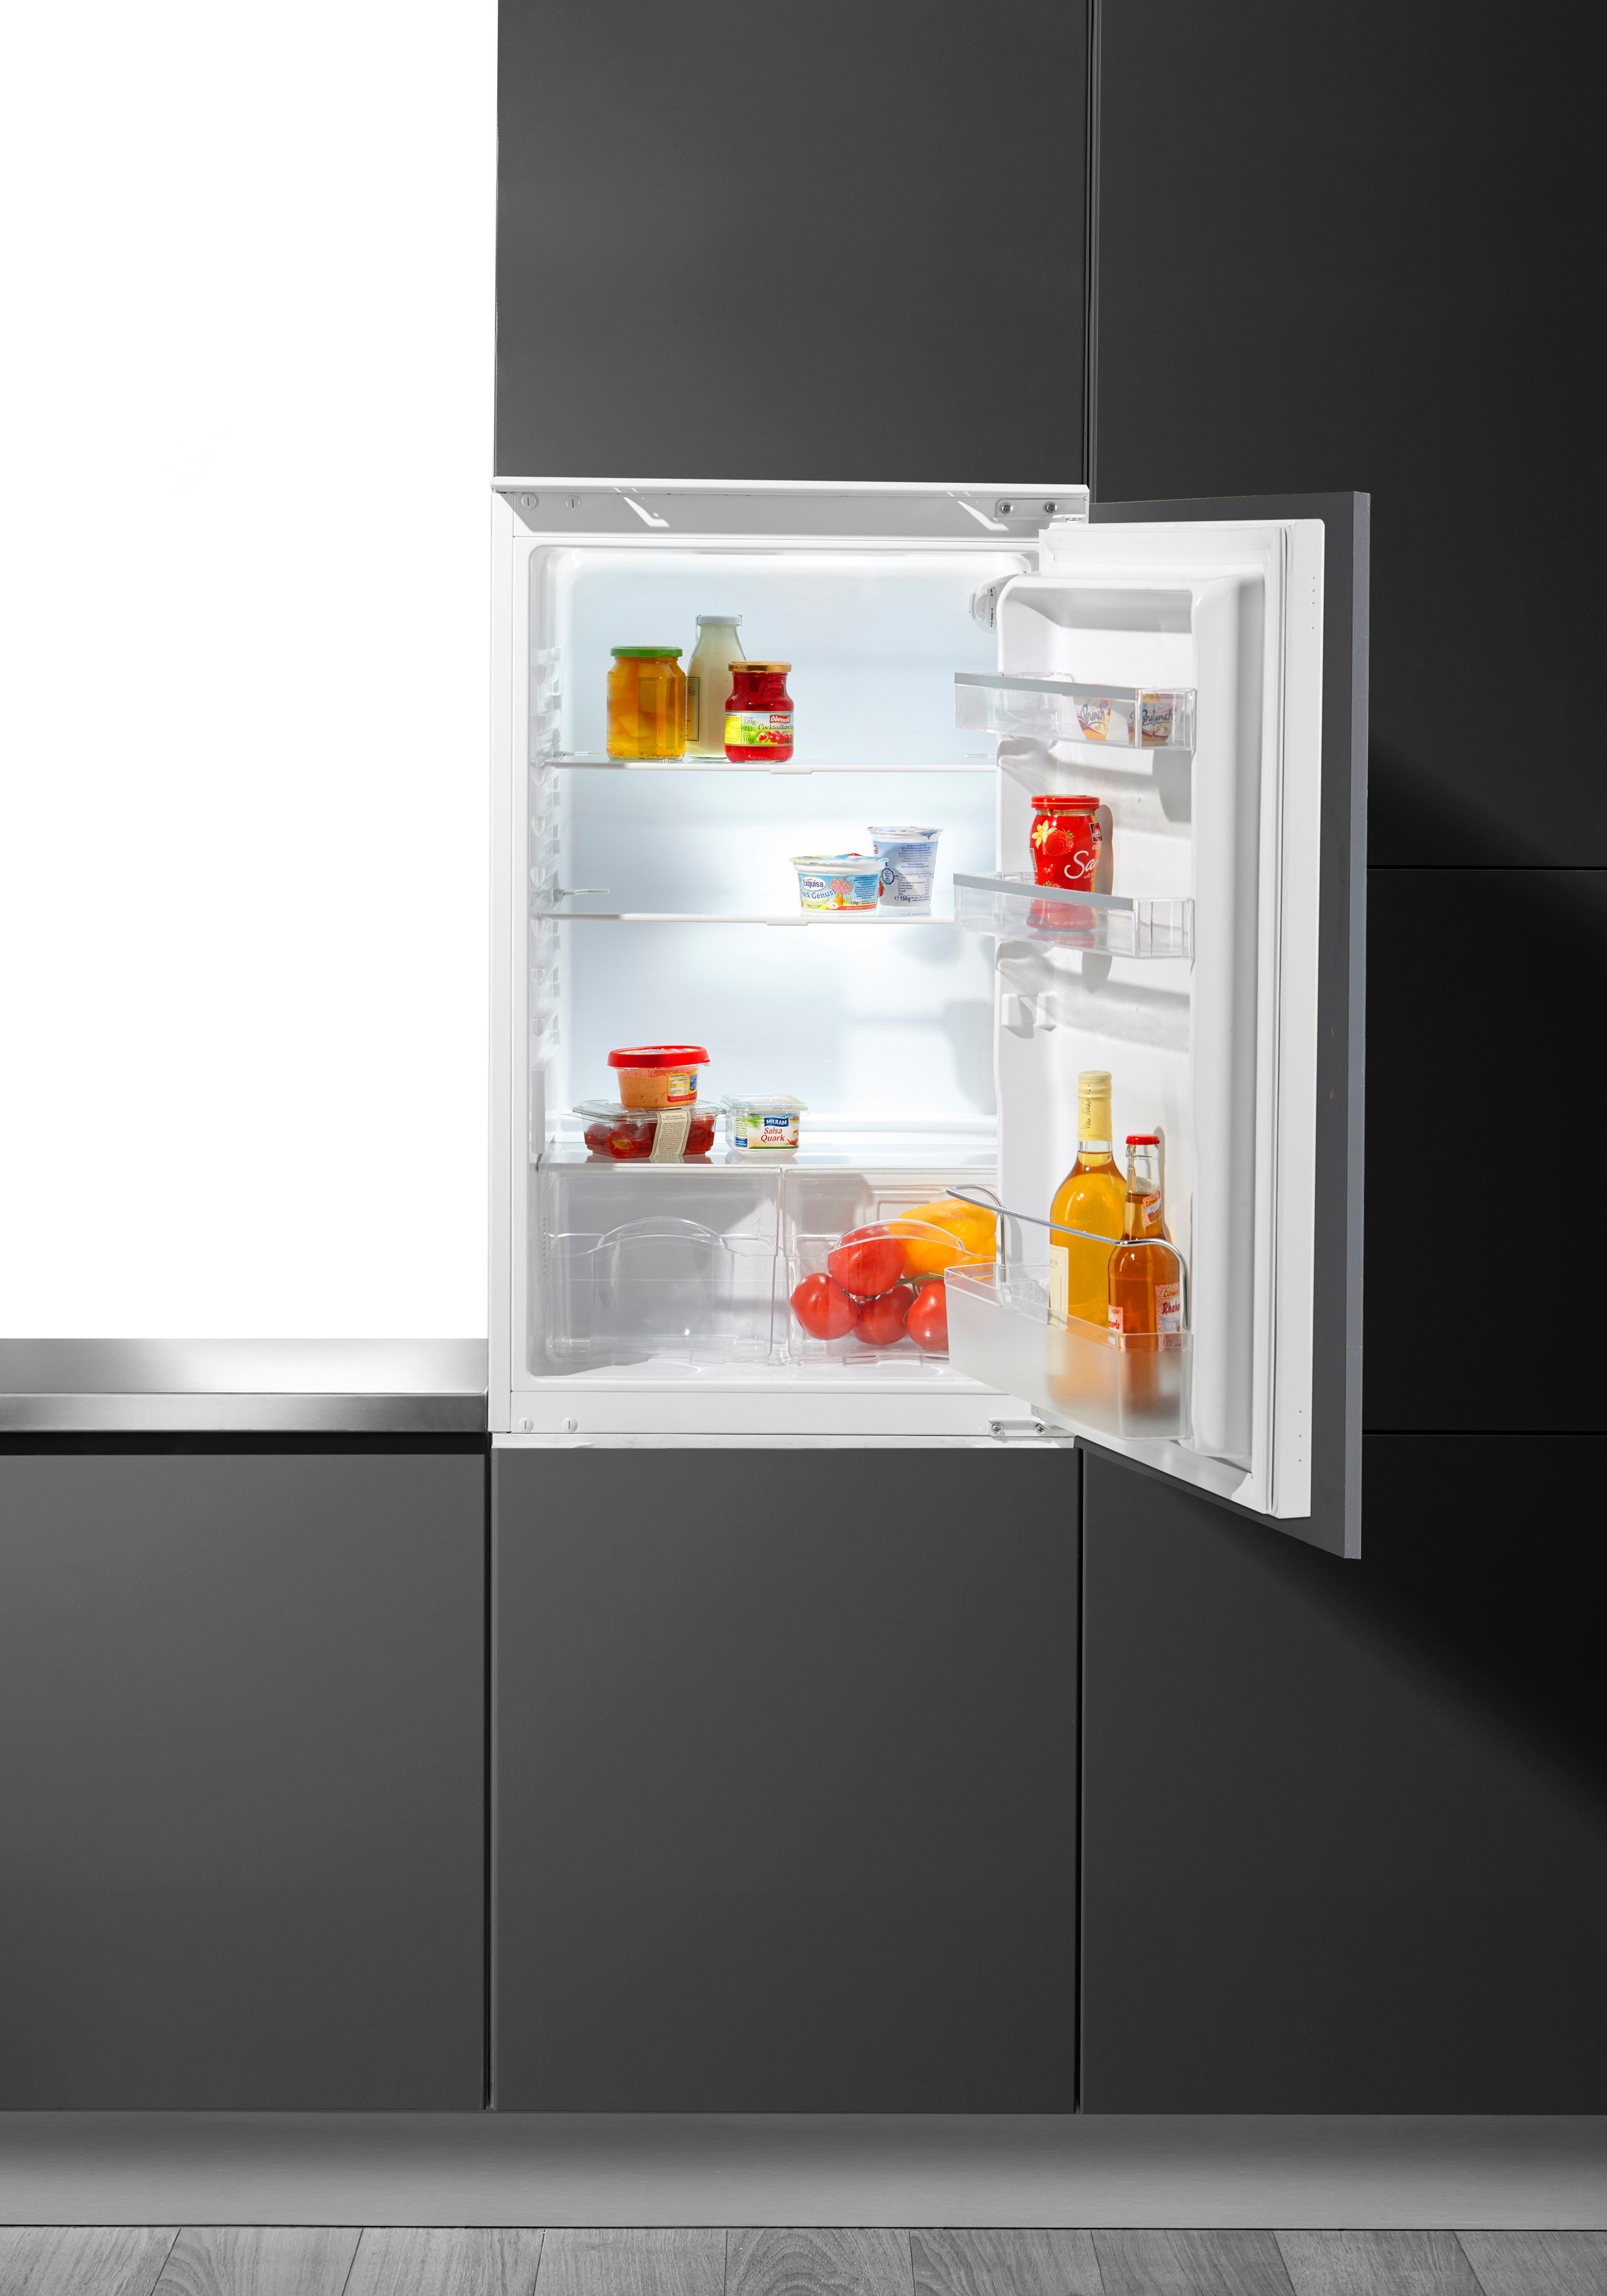 Hanseatic Einbaukühlschrank HEKS8854F, 88 cm hoch, 54 cm breit, 88 cm hoch  online kaufen | OTTO